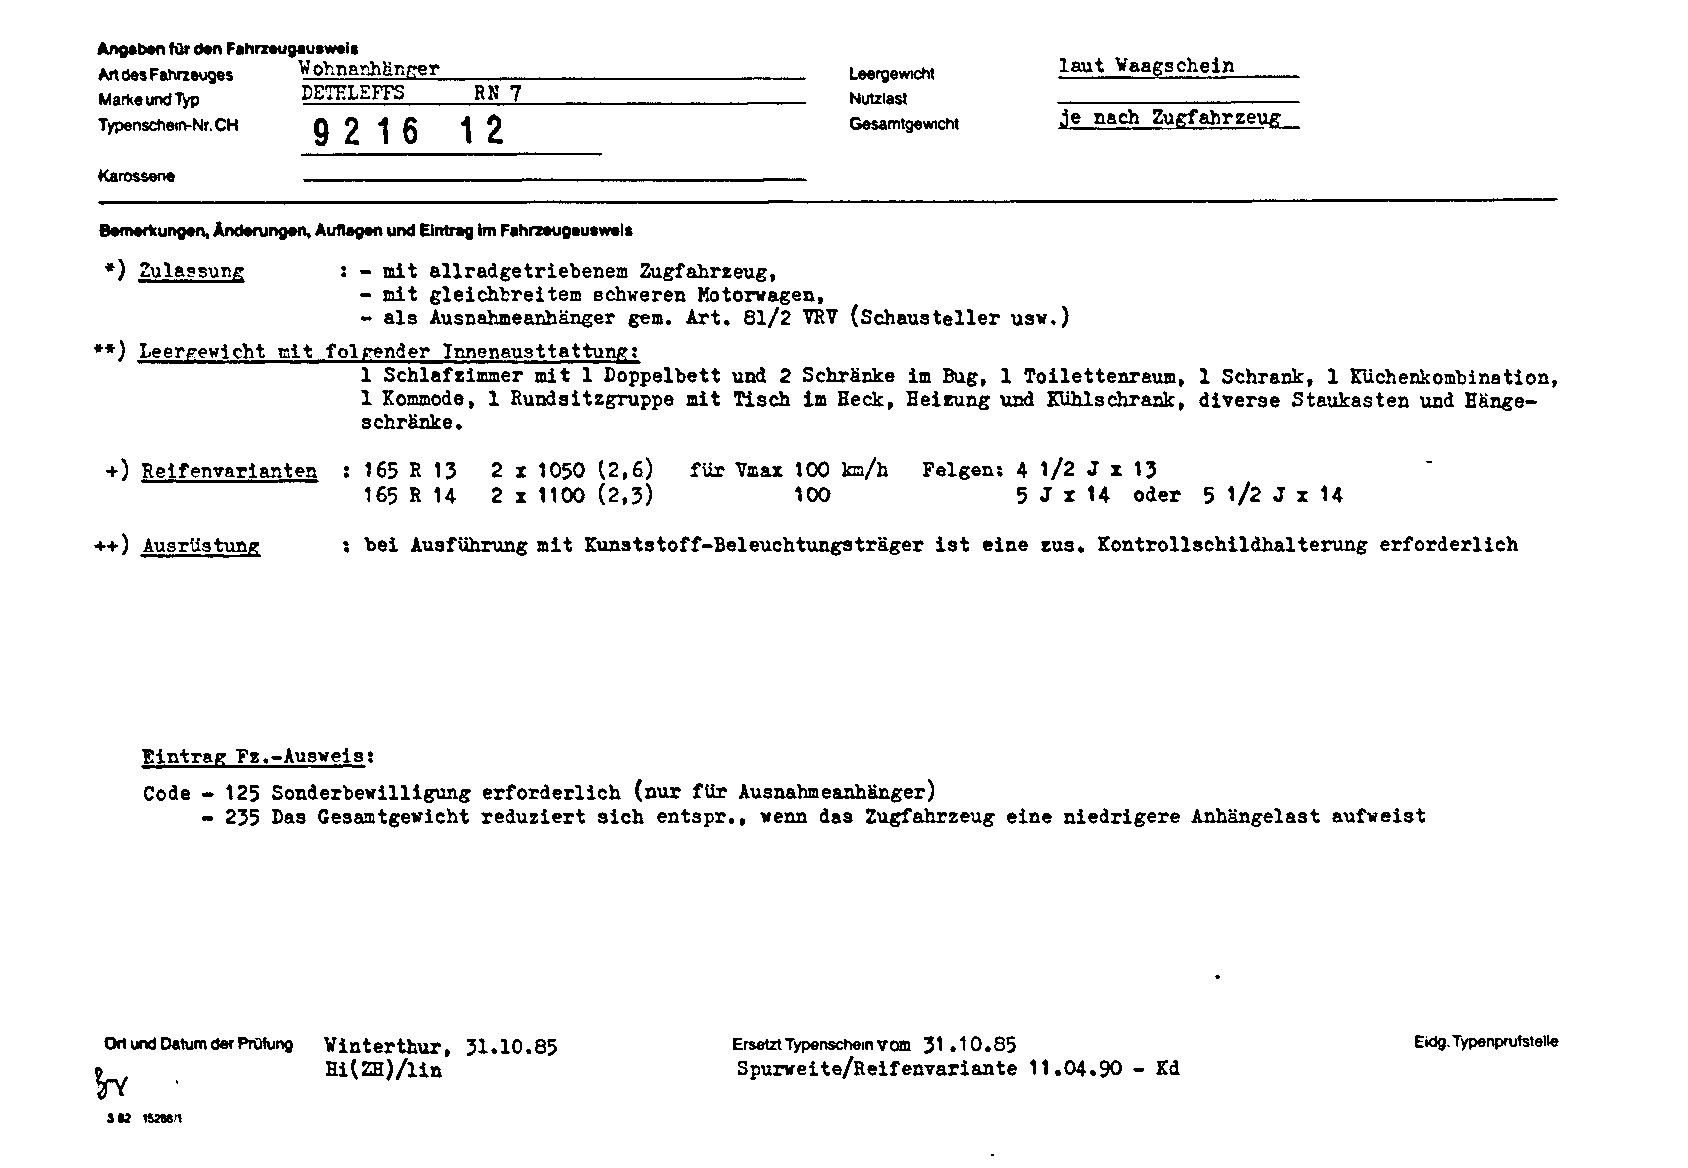 Schweizer Typenschein 921612 Deutsch Seite 2 (TG.DE.921612.2.png)